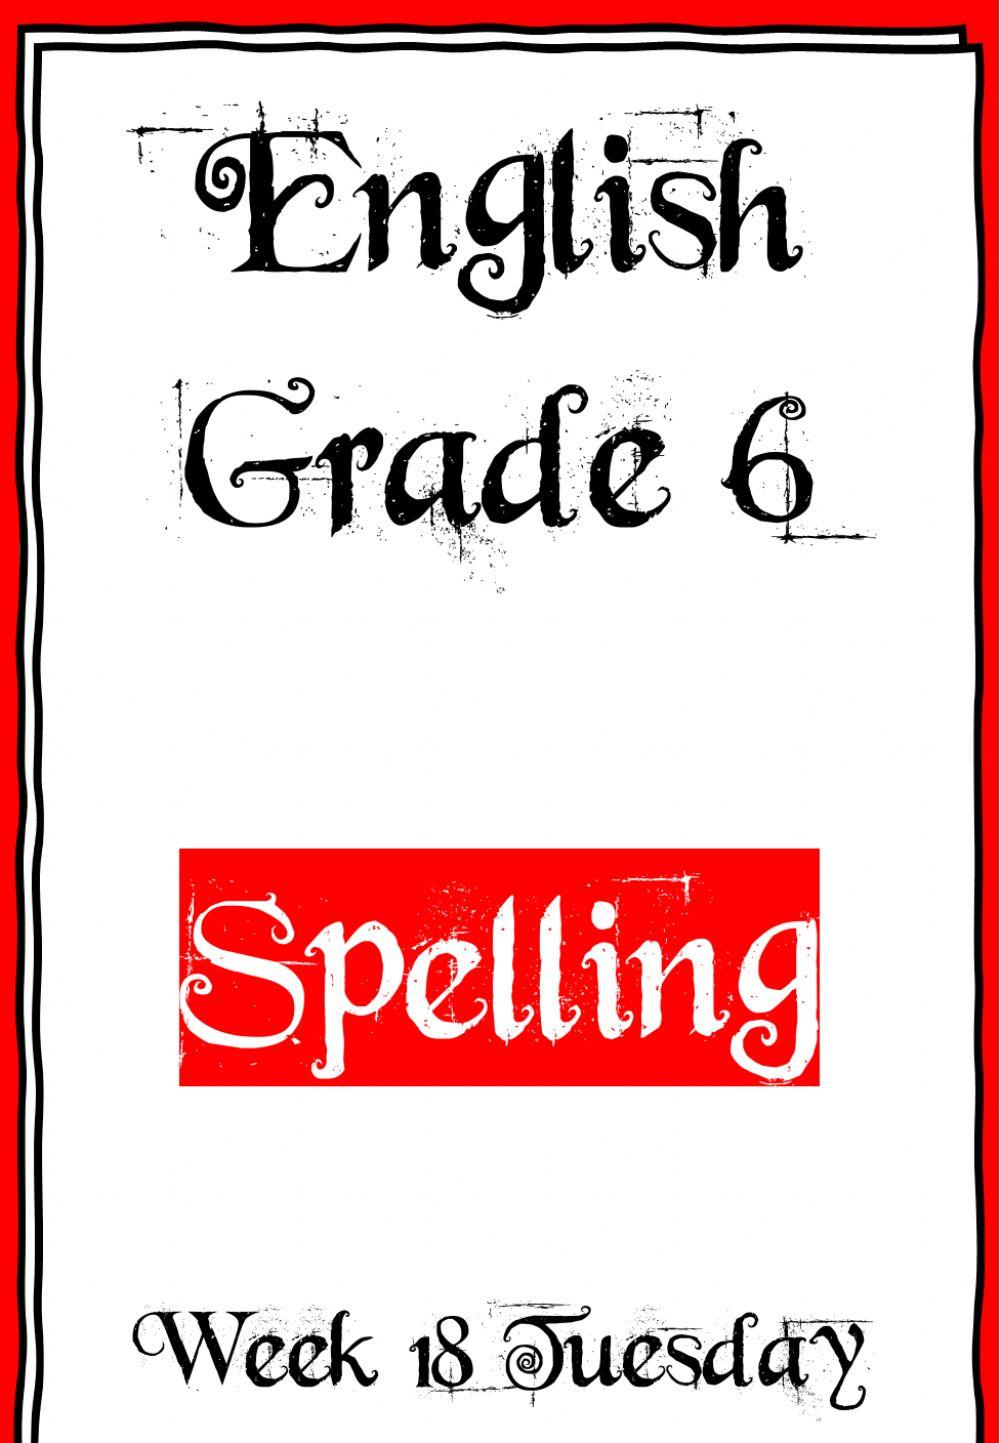 Week 18 - Spelling - Tuesday 6